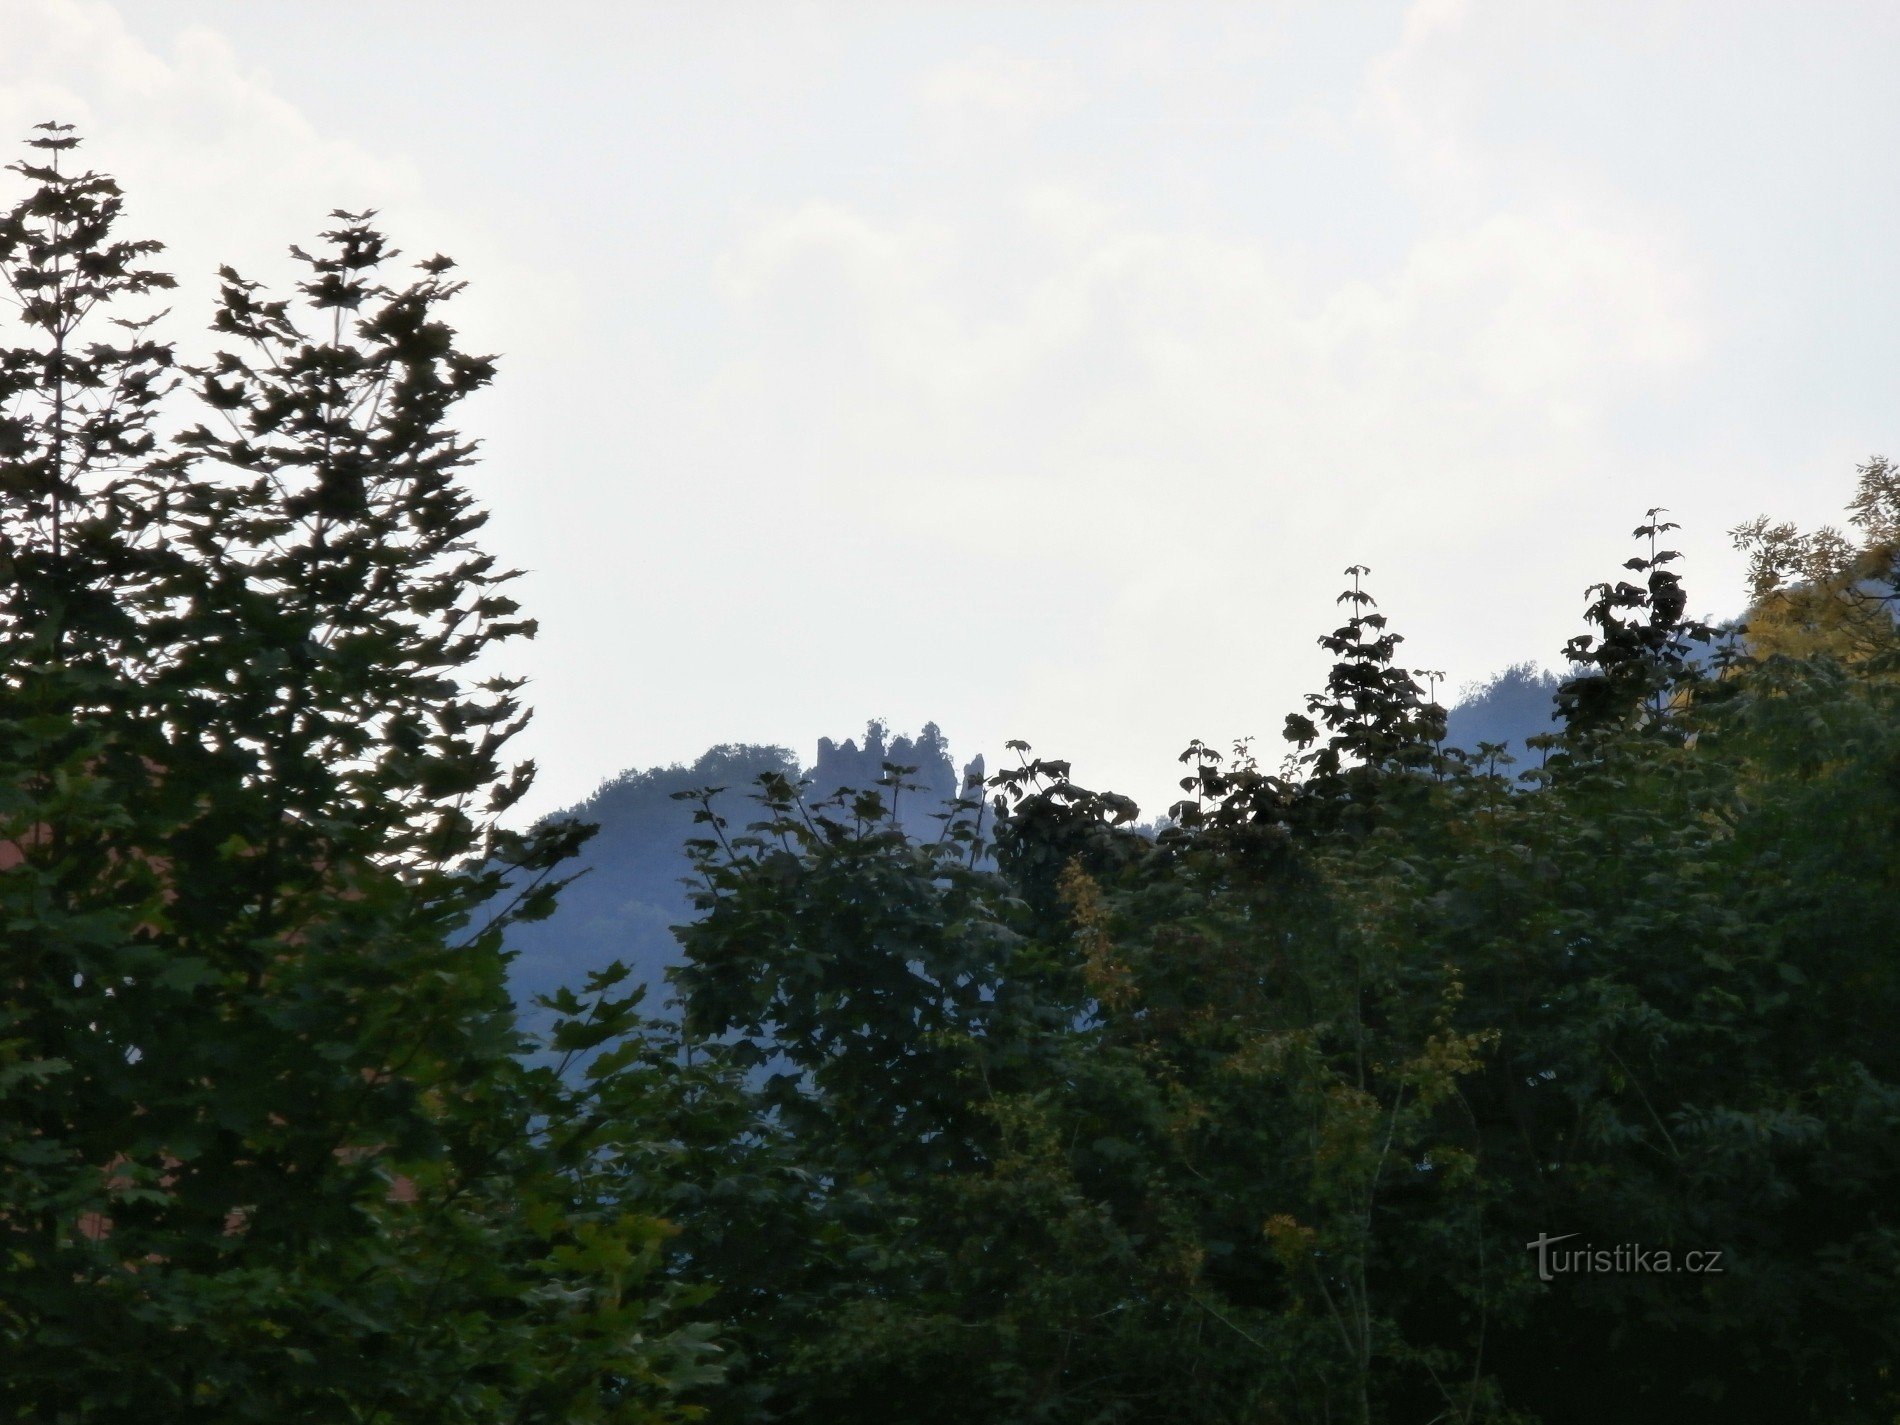 2. Dietro i binari della ferrovia si possono vedere le rovine del castello di Egerberk